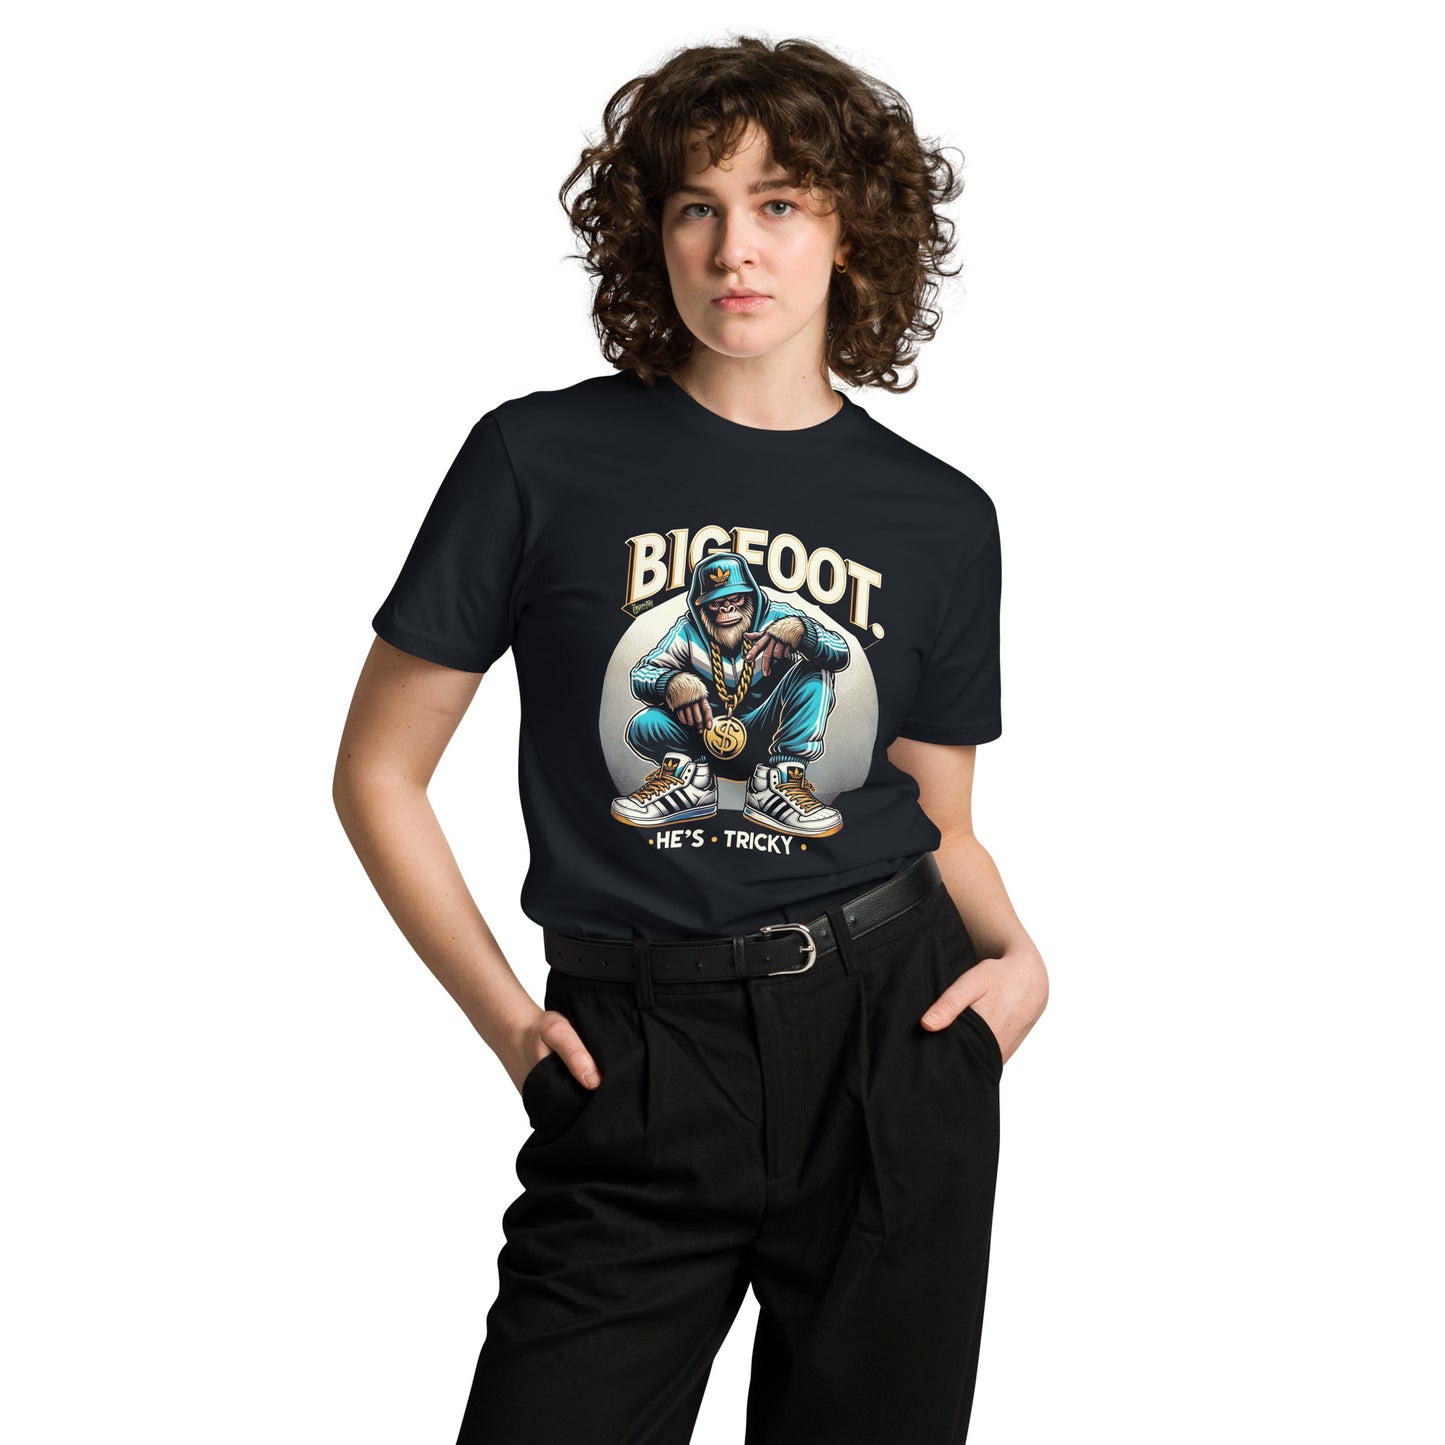 Bigfoot He's tricky Unisex premium t-shirt